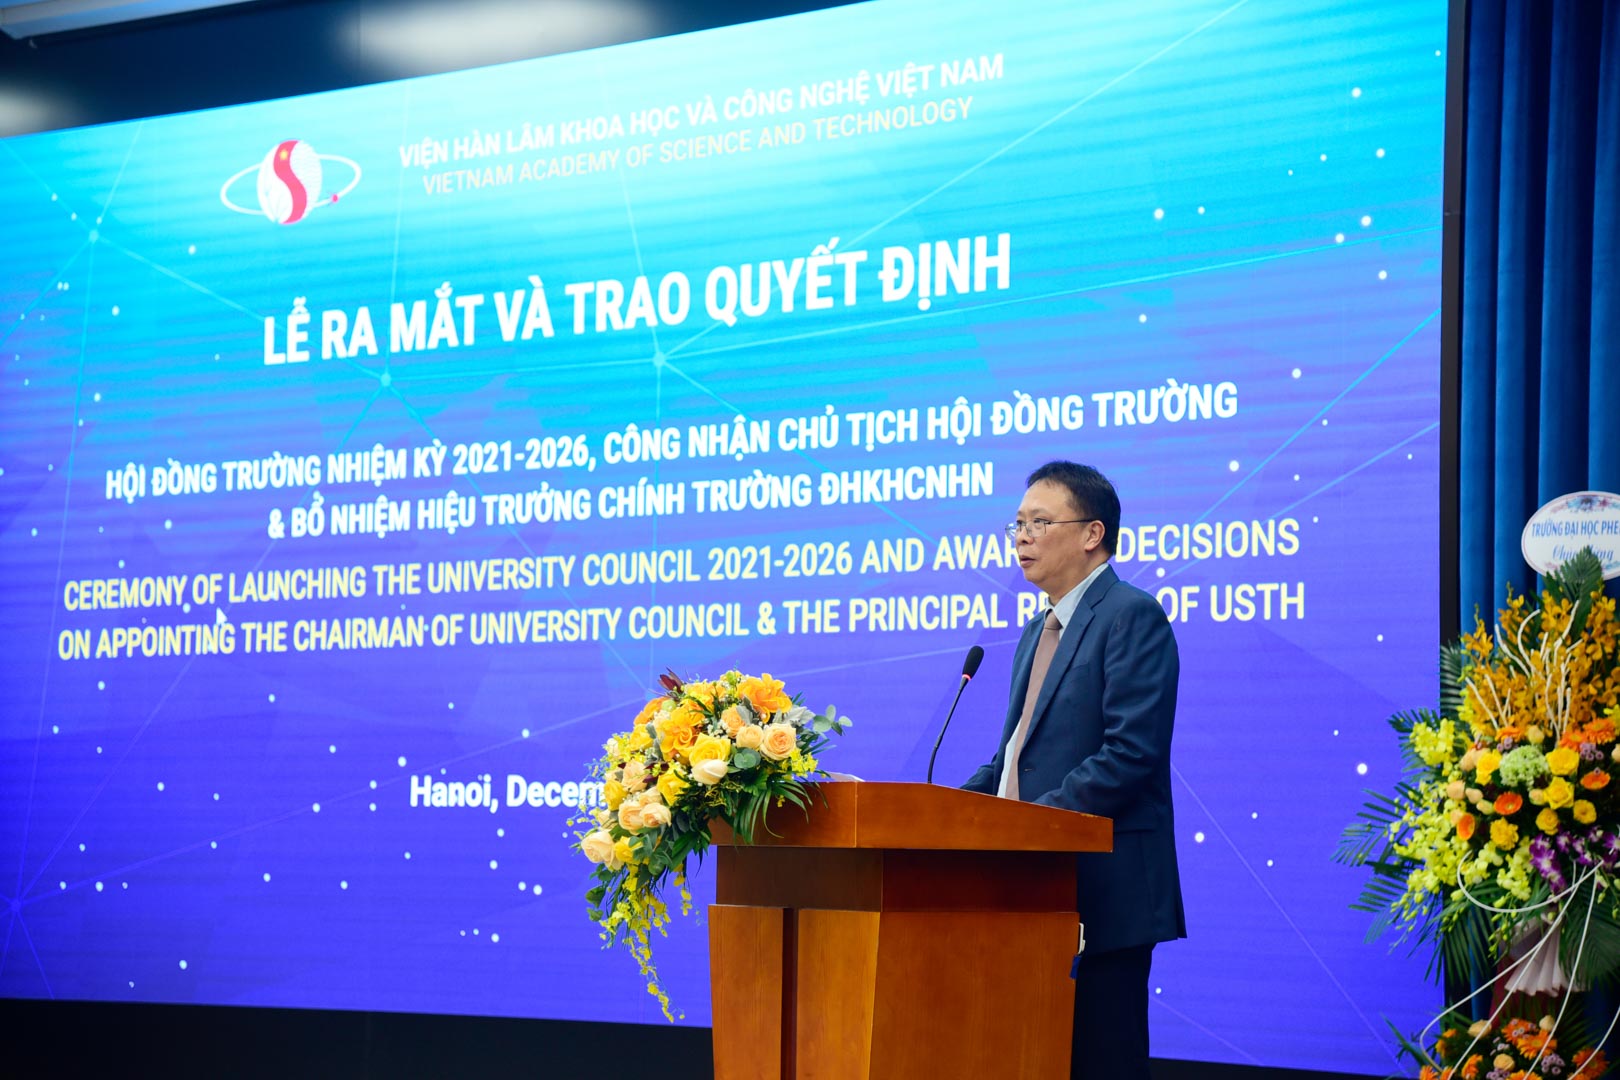 GS VS Châu Văn Minh, Chủ tịch Viện Hàn lâm Khoa học và Công nghệ Việt Nam